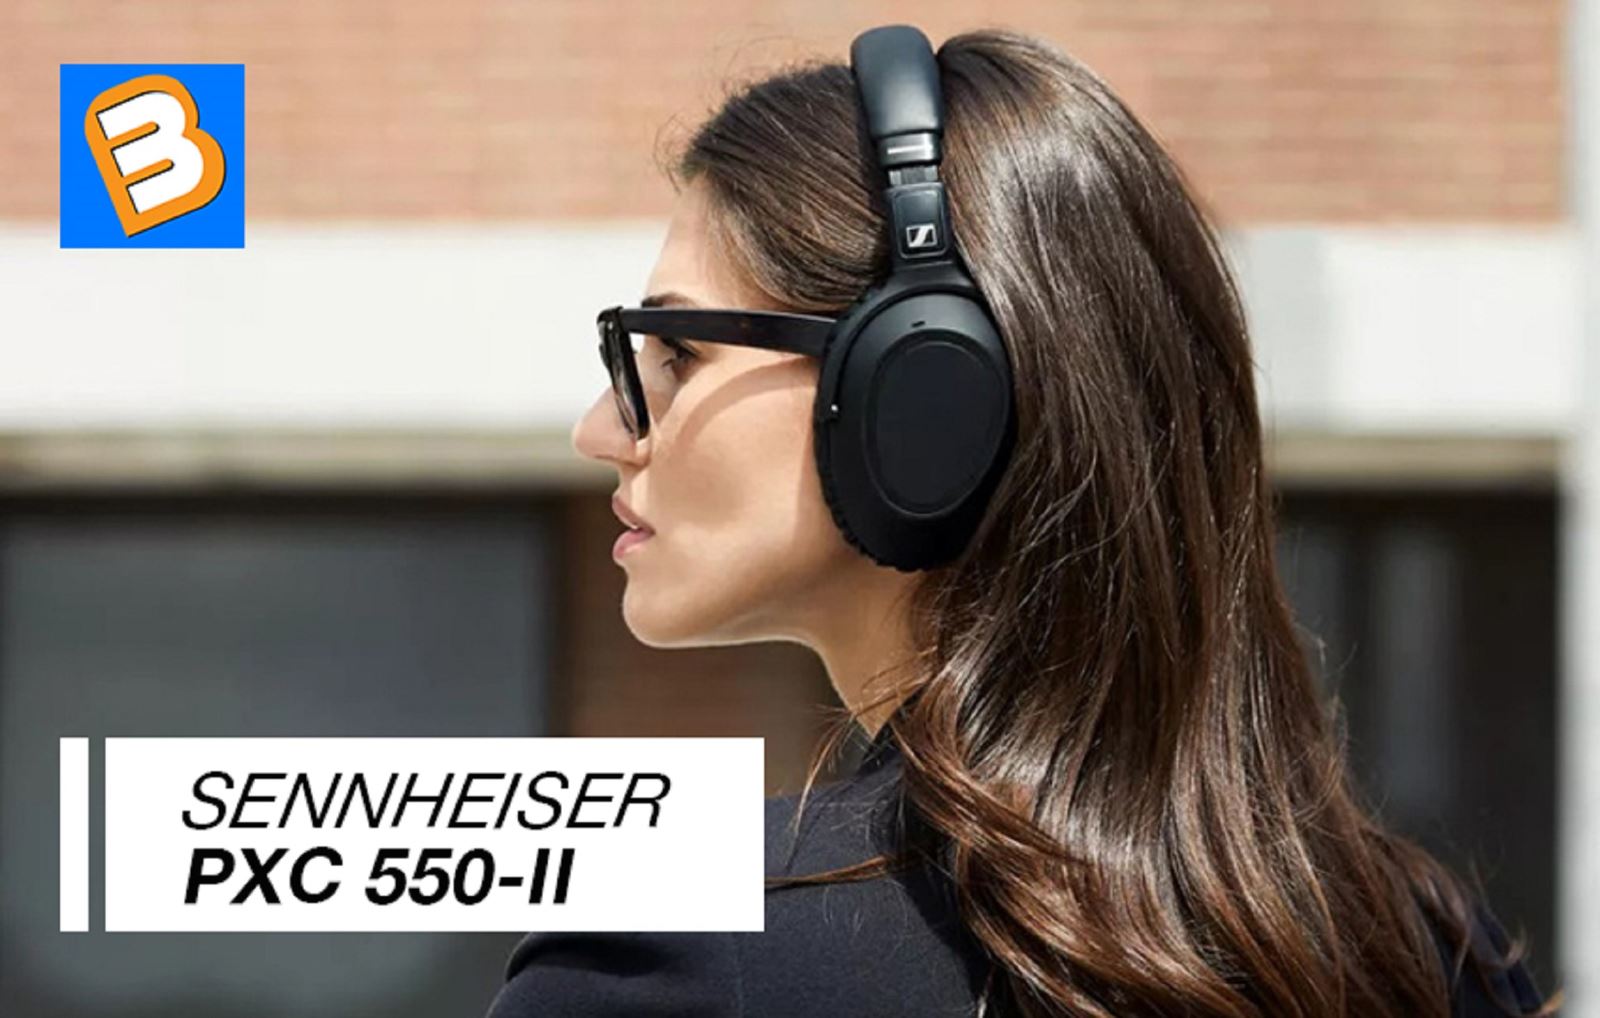 Sennheiser ra mắt mẫu tai nghe chống ồn cao cấp PXC 550-II